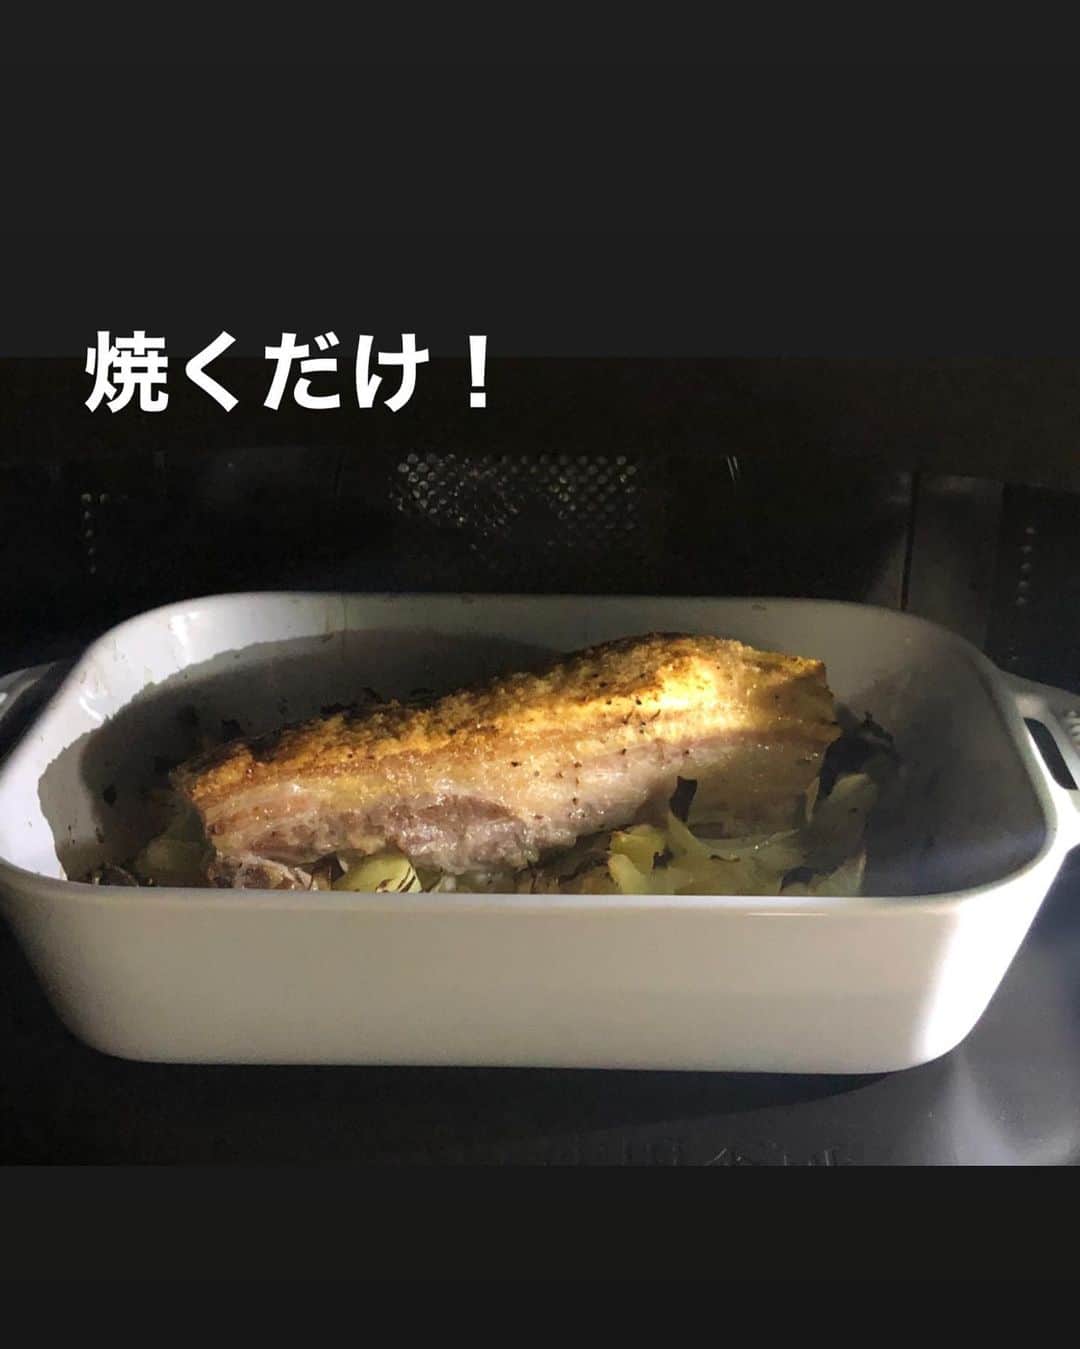 utoshさんのインスタグラム写真 - (utoshInstagram)「【レシピ付】豚バラの簡単ロースト・ポテト付き！﻿ ﻿ 料理家の脇雅代先生(@masayowaki )が発起人となってスタートした「#料理リレー」﻿ 参加させて頂きます。﻿ ﻿ このレシピは、妻に料理を作っていた事さえ気づかせなかったオーブンで作れるほっとくだけの簡単レシピです。﻿ ロースト作る時の定番作業として、肉の下に野菜を引くというのがあるんですが、﻿ これは下からの火入れを優しくして温度を均等にするためなんですが、この肉の下の野菜がうまいんですよ。﻿ ﻿ 火入れ目的だったら玉ねぎだけでもいいんですが、ぜひじゃがいもなど、いろんな野菜を置いて作ってみてください。﻿ ほくほくの野菜グリルになりますよ！﻿ ﻿ ﻿ 今回、僕にバトンを渡してくださったのは﻿ 料理研究家の岡本まどか先生（@lumias.pan）、エルグルメのイベントで何度もご一緒させて頂き、﻿ 今度一緒においしいコーヒー飲みに行きましょうという話がふわっとしたまま、いつか実現したいと思っている方です。﻿ ﻿ ﻿ ﻿ レシピはこちら↓﻿ ＿＿＿＿＿﻿ ﻿ 豚バラの簡単ロースト・ポテト付き（2人分）﻿ ﻿ 【材料】﻿ 豚バラかたまり肉 500g﻿ 玉ねぎ 1個﻿ ジャガイモ（大） 1個（小なら2個）﻿ ﻿ 塩　大さじ1弱くらい（肉の全面にまぶせる量）﻿ ローズマリーなど　適量﻿ （※ハーブソルトを使うのがオススメ）﻿ オリーブオイル 大さじ2 ﻿ A〈粒マスタードたれ〉﻿ 粒マスタード　大さじ1﻿ マヨネーズ　小さじ1﻿ オリーブオイル　大さじ1﻿ お酢（白ワインビネガー） 小さじ2﻿ 塩　少々﻿ ﻿ ﻿ 【作り方】﻿ （1）豚バラかたまり肉の全面に塩とハーブを塗りこむ（時間があるなら3時間冷蔵庫にいれて置いておく。時間がなければ置かなくてもOK）。玉ねぎは食べやすい大きさにくし切りにする。ジャガイモも食べやすい大きさに切る（皮はお好みで剥いてください）。Aは混ぜておく。﻿ ﻿ （2）大きめの耐熱皿に玉ねぎとジャガイモを引いて、オリーブオイルをかけて、塩少々。その上に肉を乗せ、200°のオーブンで45分加熱する。（玉ねぎは焦げる部分があるので、そういうのは取り除く）﻿ ﻿ （3）取り出して肉を7mmくらいの幅に切り、お皿に盛りつけたらAをかけて完成。﻿ ＿＿＿＿＿﻿ ﻿ ﻿ ぜひ作ってみてくださいね。﻿ No local No food おいしく楽しく！﻿ ﻿ ﻿ そして僕のバトンを引き継いてくれるのは﻿ 「激悪飯」でおなじみのぐっちくん　(@gucci.tckb)﻿ ﻿ ﻿ #うちで過ごそう #stayhome #料理リレー #cookingrelay﻿ #脇雅世加藤巴里きじまゆうた杵島直美今泉久美塩田ノア金子文恵宇田川多眞希大友まりこ尾田衣子小野孝予岡本まどか植木俊裕﻿ ﻿ #ややはつレシピ #とりあえず野菜食﻿ #ellegourmet#lunch#brunch#breakfast#foodporn#instagramjapan#vsco#IGersJP#onthetable#ランチ#おうちカフェ#うちごはん#暮らし#フーディーテーブル﻿ #cooking#homemade#おうちごはん#朝ごはん#japanesebreakfast#f52grams」4月20日 22時30分 - utosh